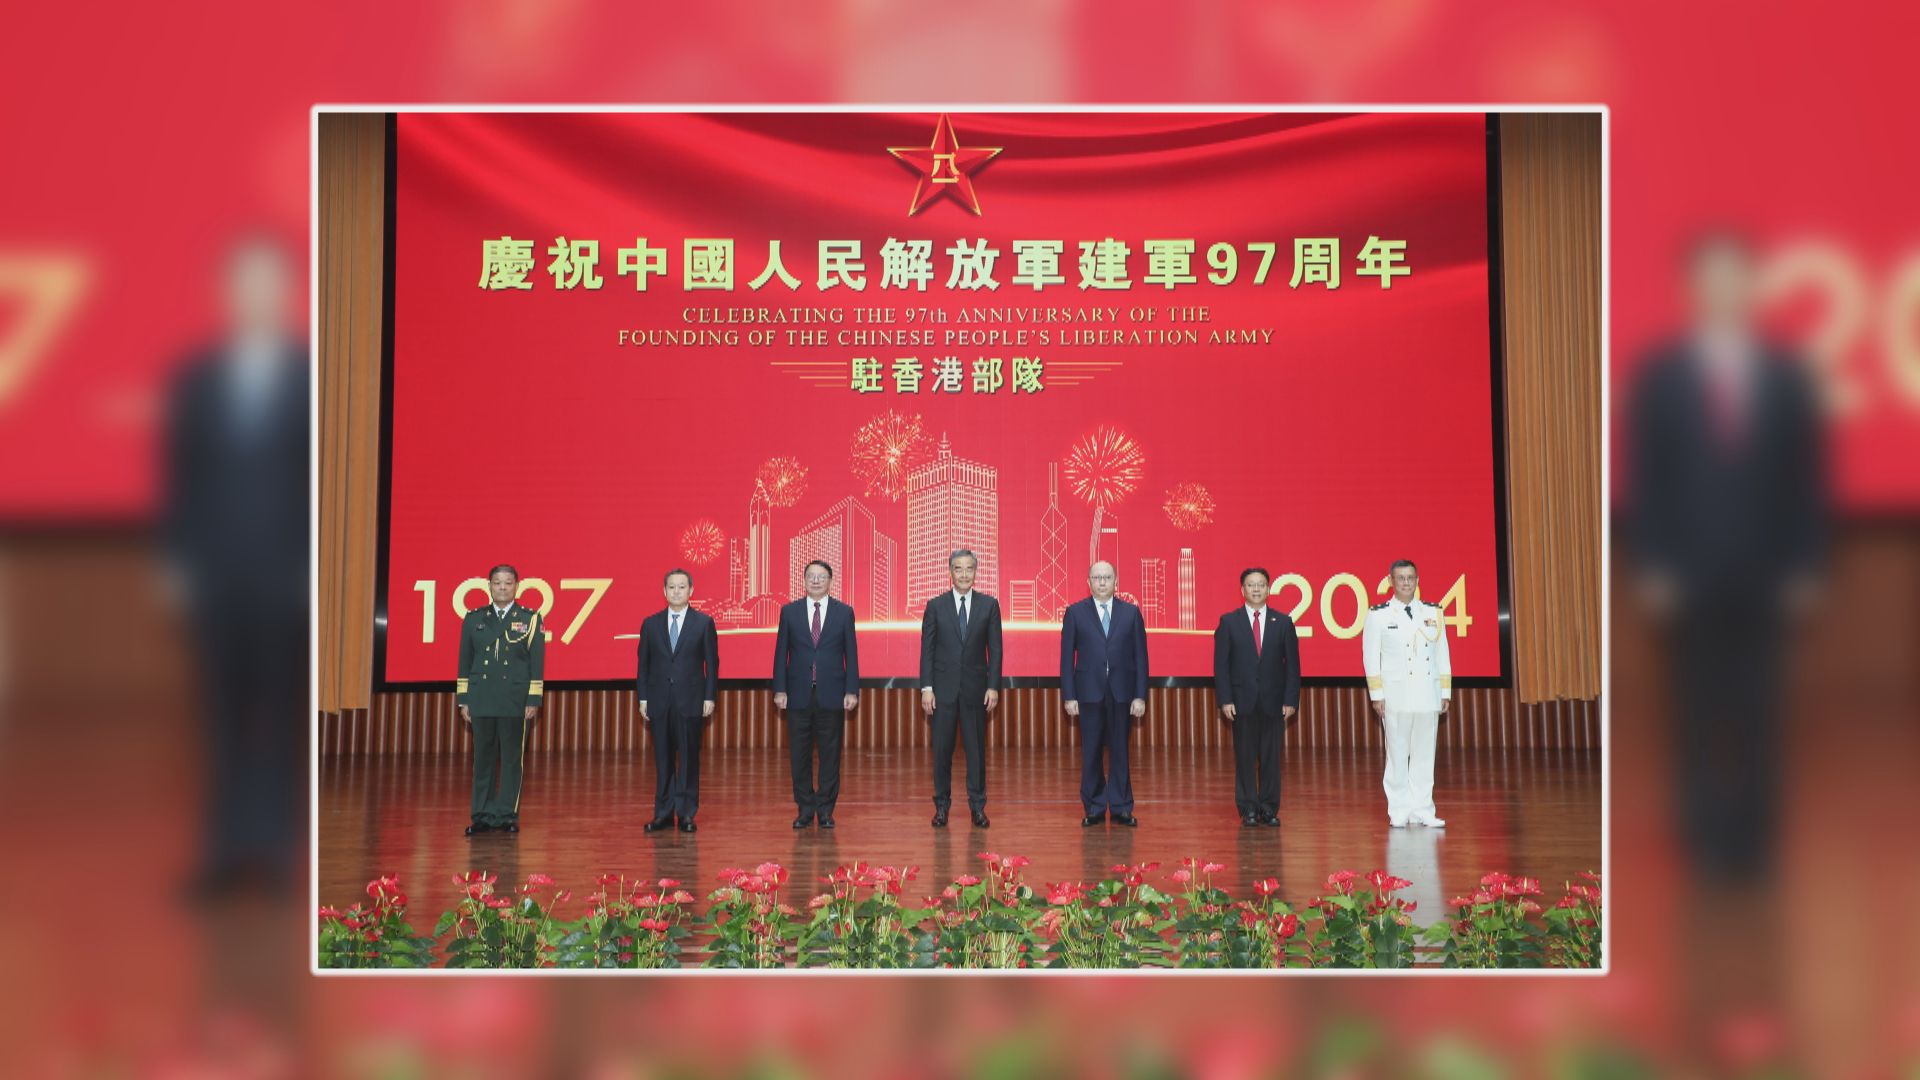 解放軍駐港部隊舉行招待會慶祝建軍97周年